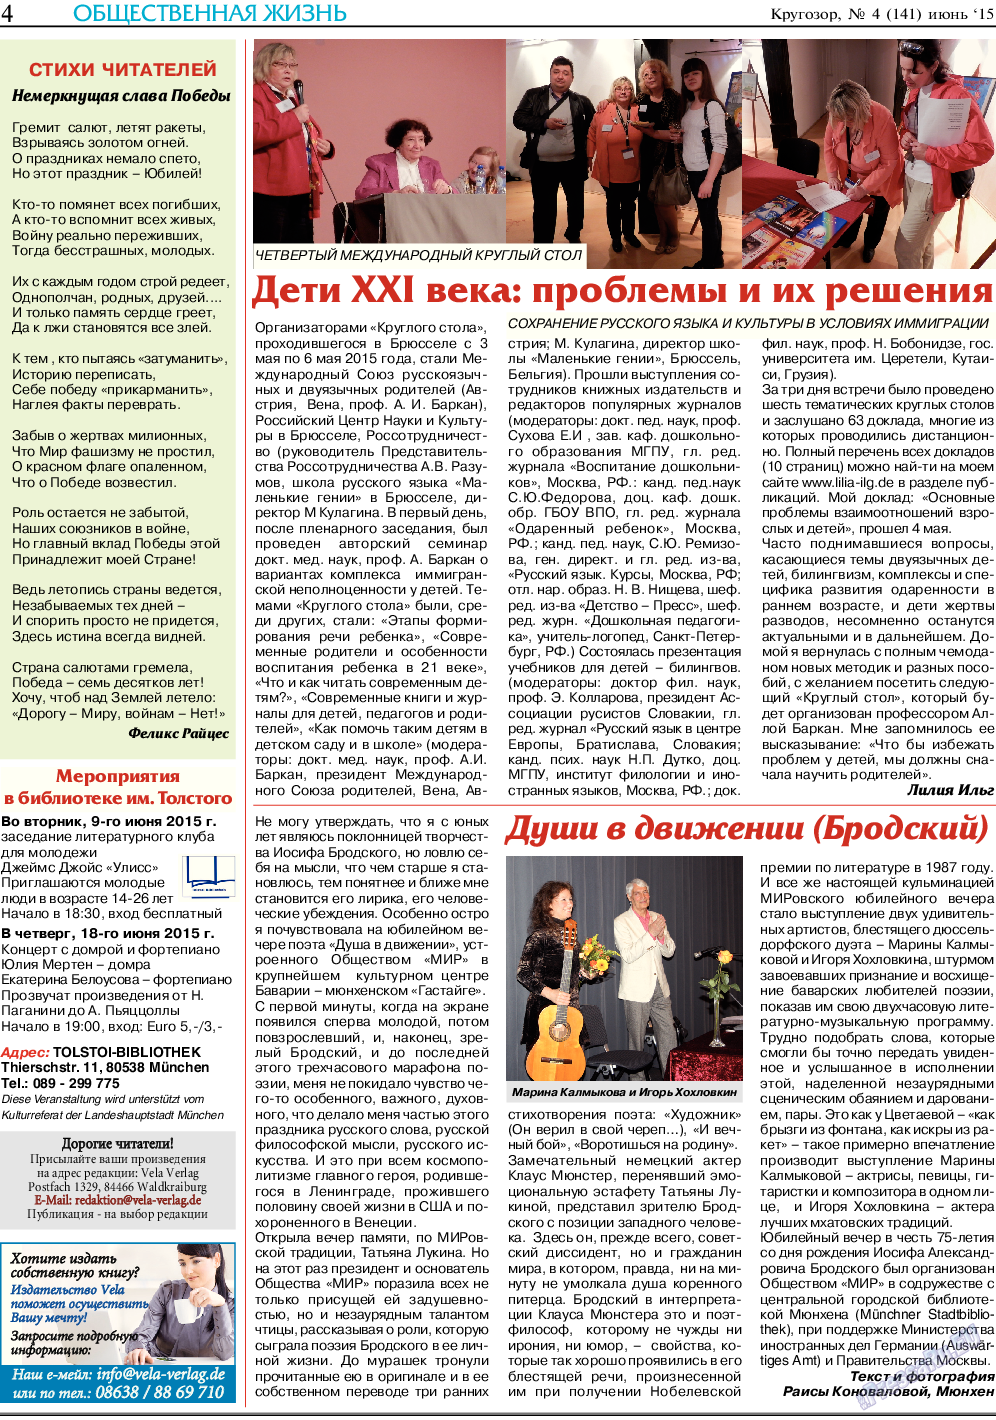 Кругозор, газета. 2015 №6 стр.4